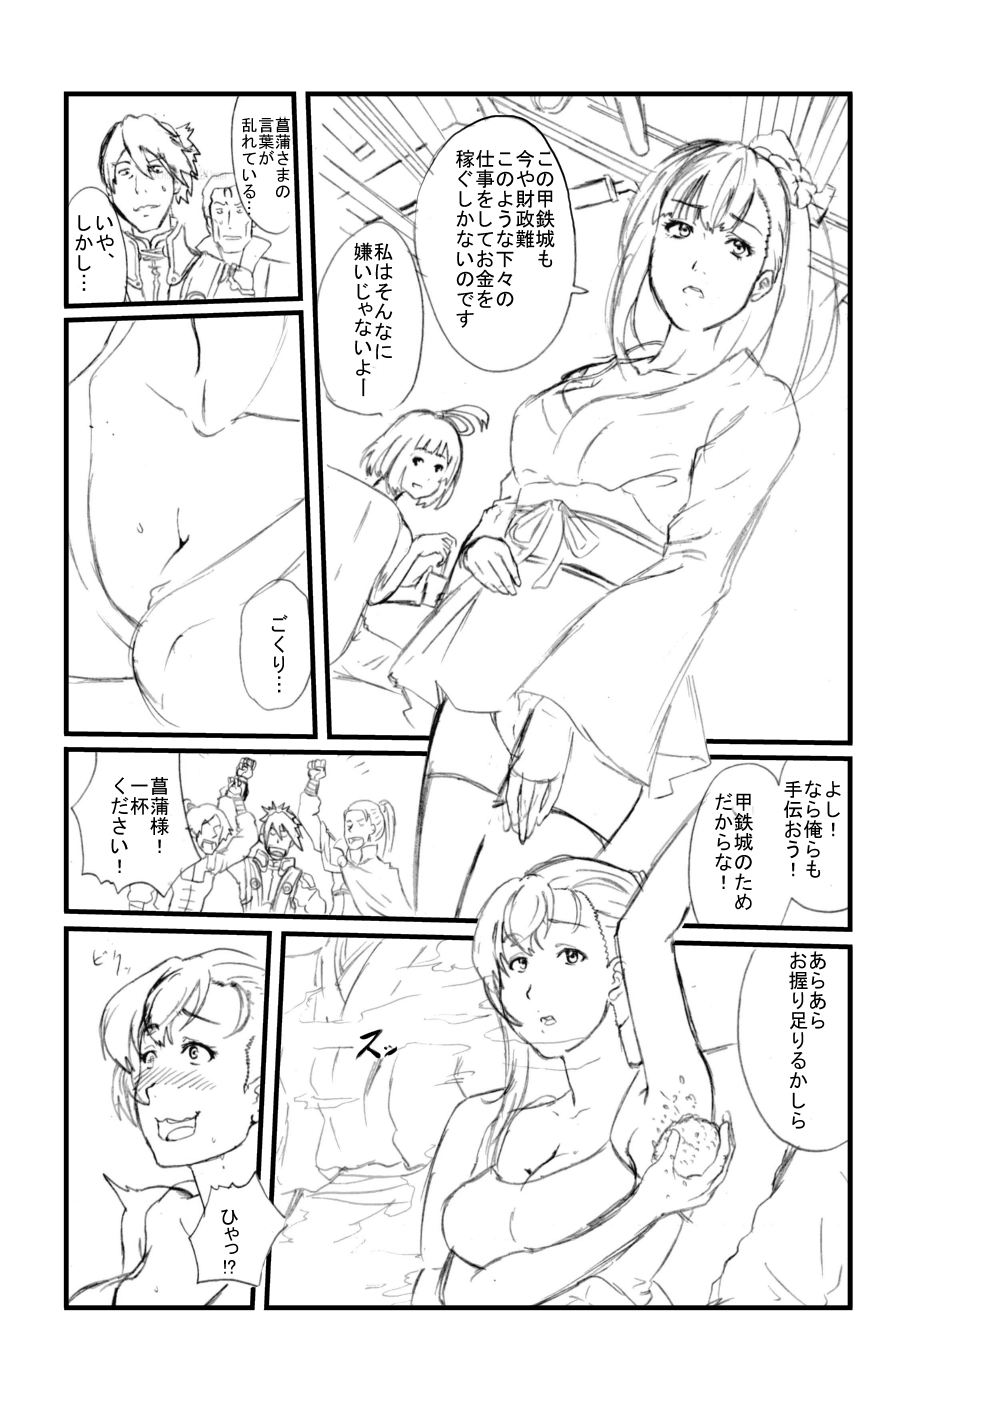 [Sezoku] Koutetsujou no Kabaneri (Koutetsujou no Kabaneri) page 3 full